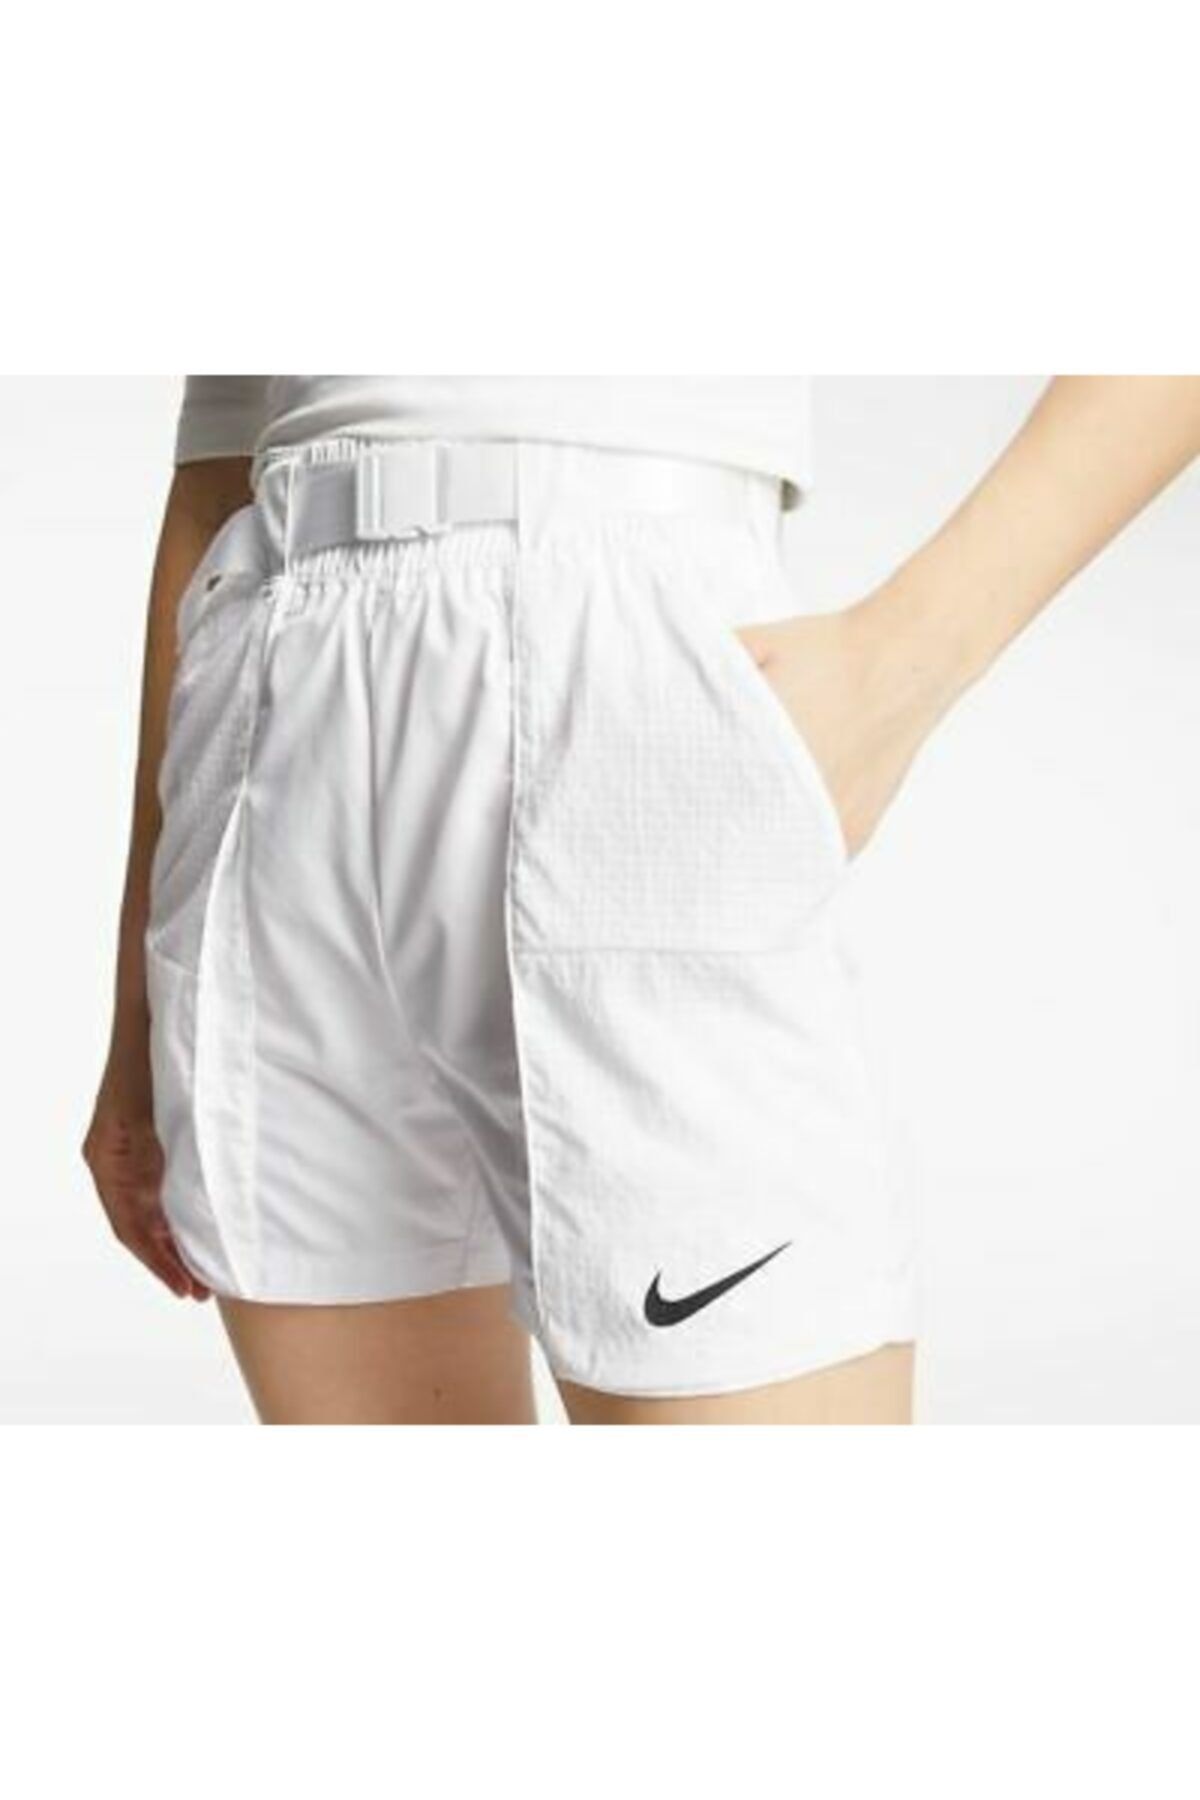 Nike Women's Nsw Swoosh Woven Shorts White Dd2095-100